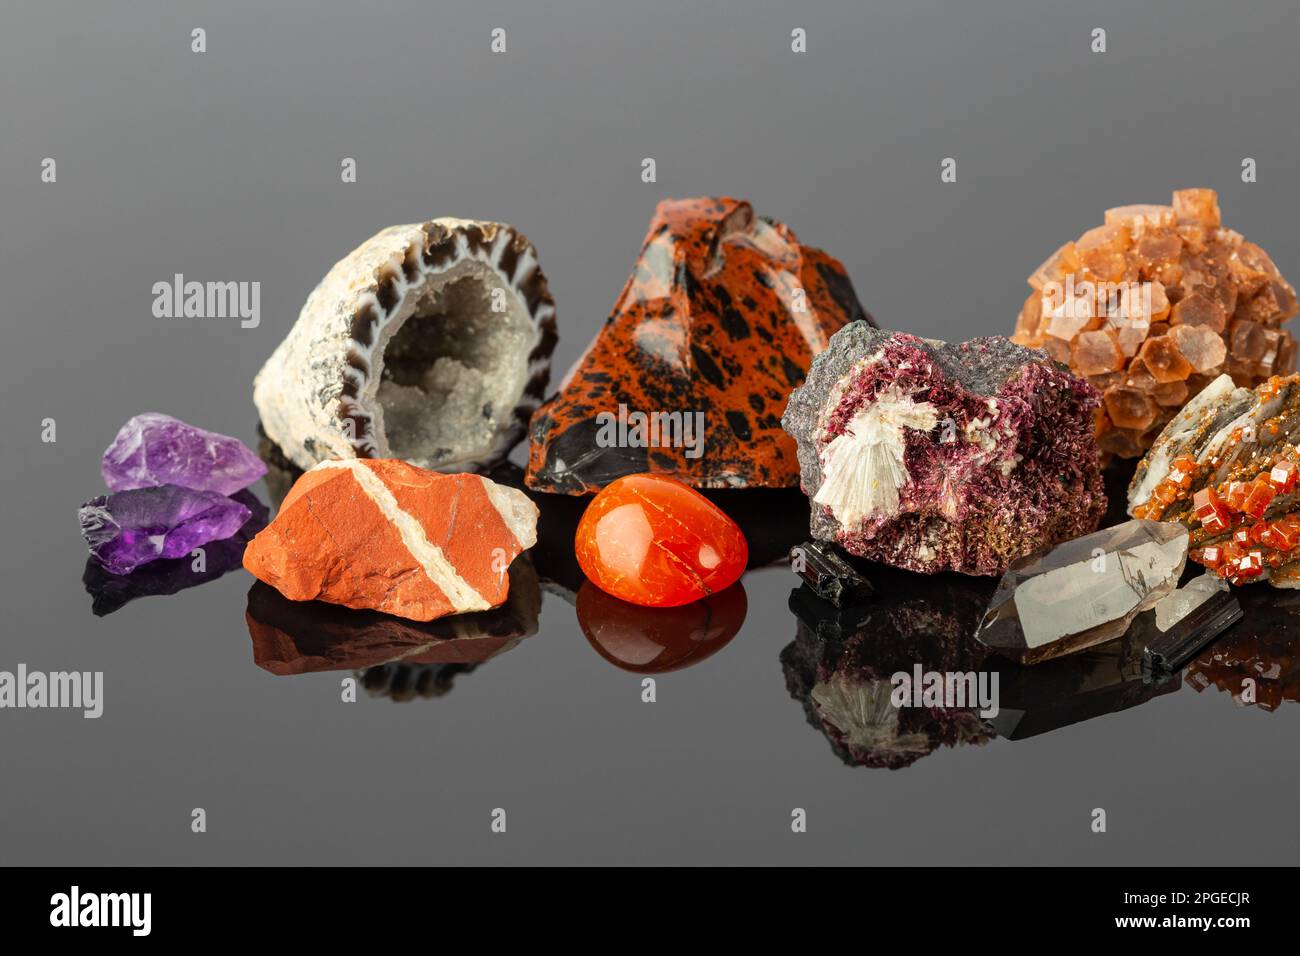 Foto ravvicinata del Gruppo delle pietre e dei minerali, tra cui il gelsomino rosso, l'aragonite Sputnik, i cristalli di Erythrite, l'Obsidiana di Mogano e l'Agata Geode su R Foto Stock